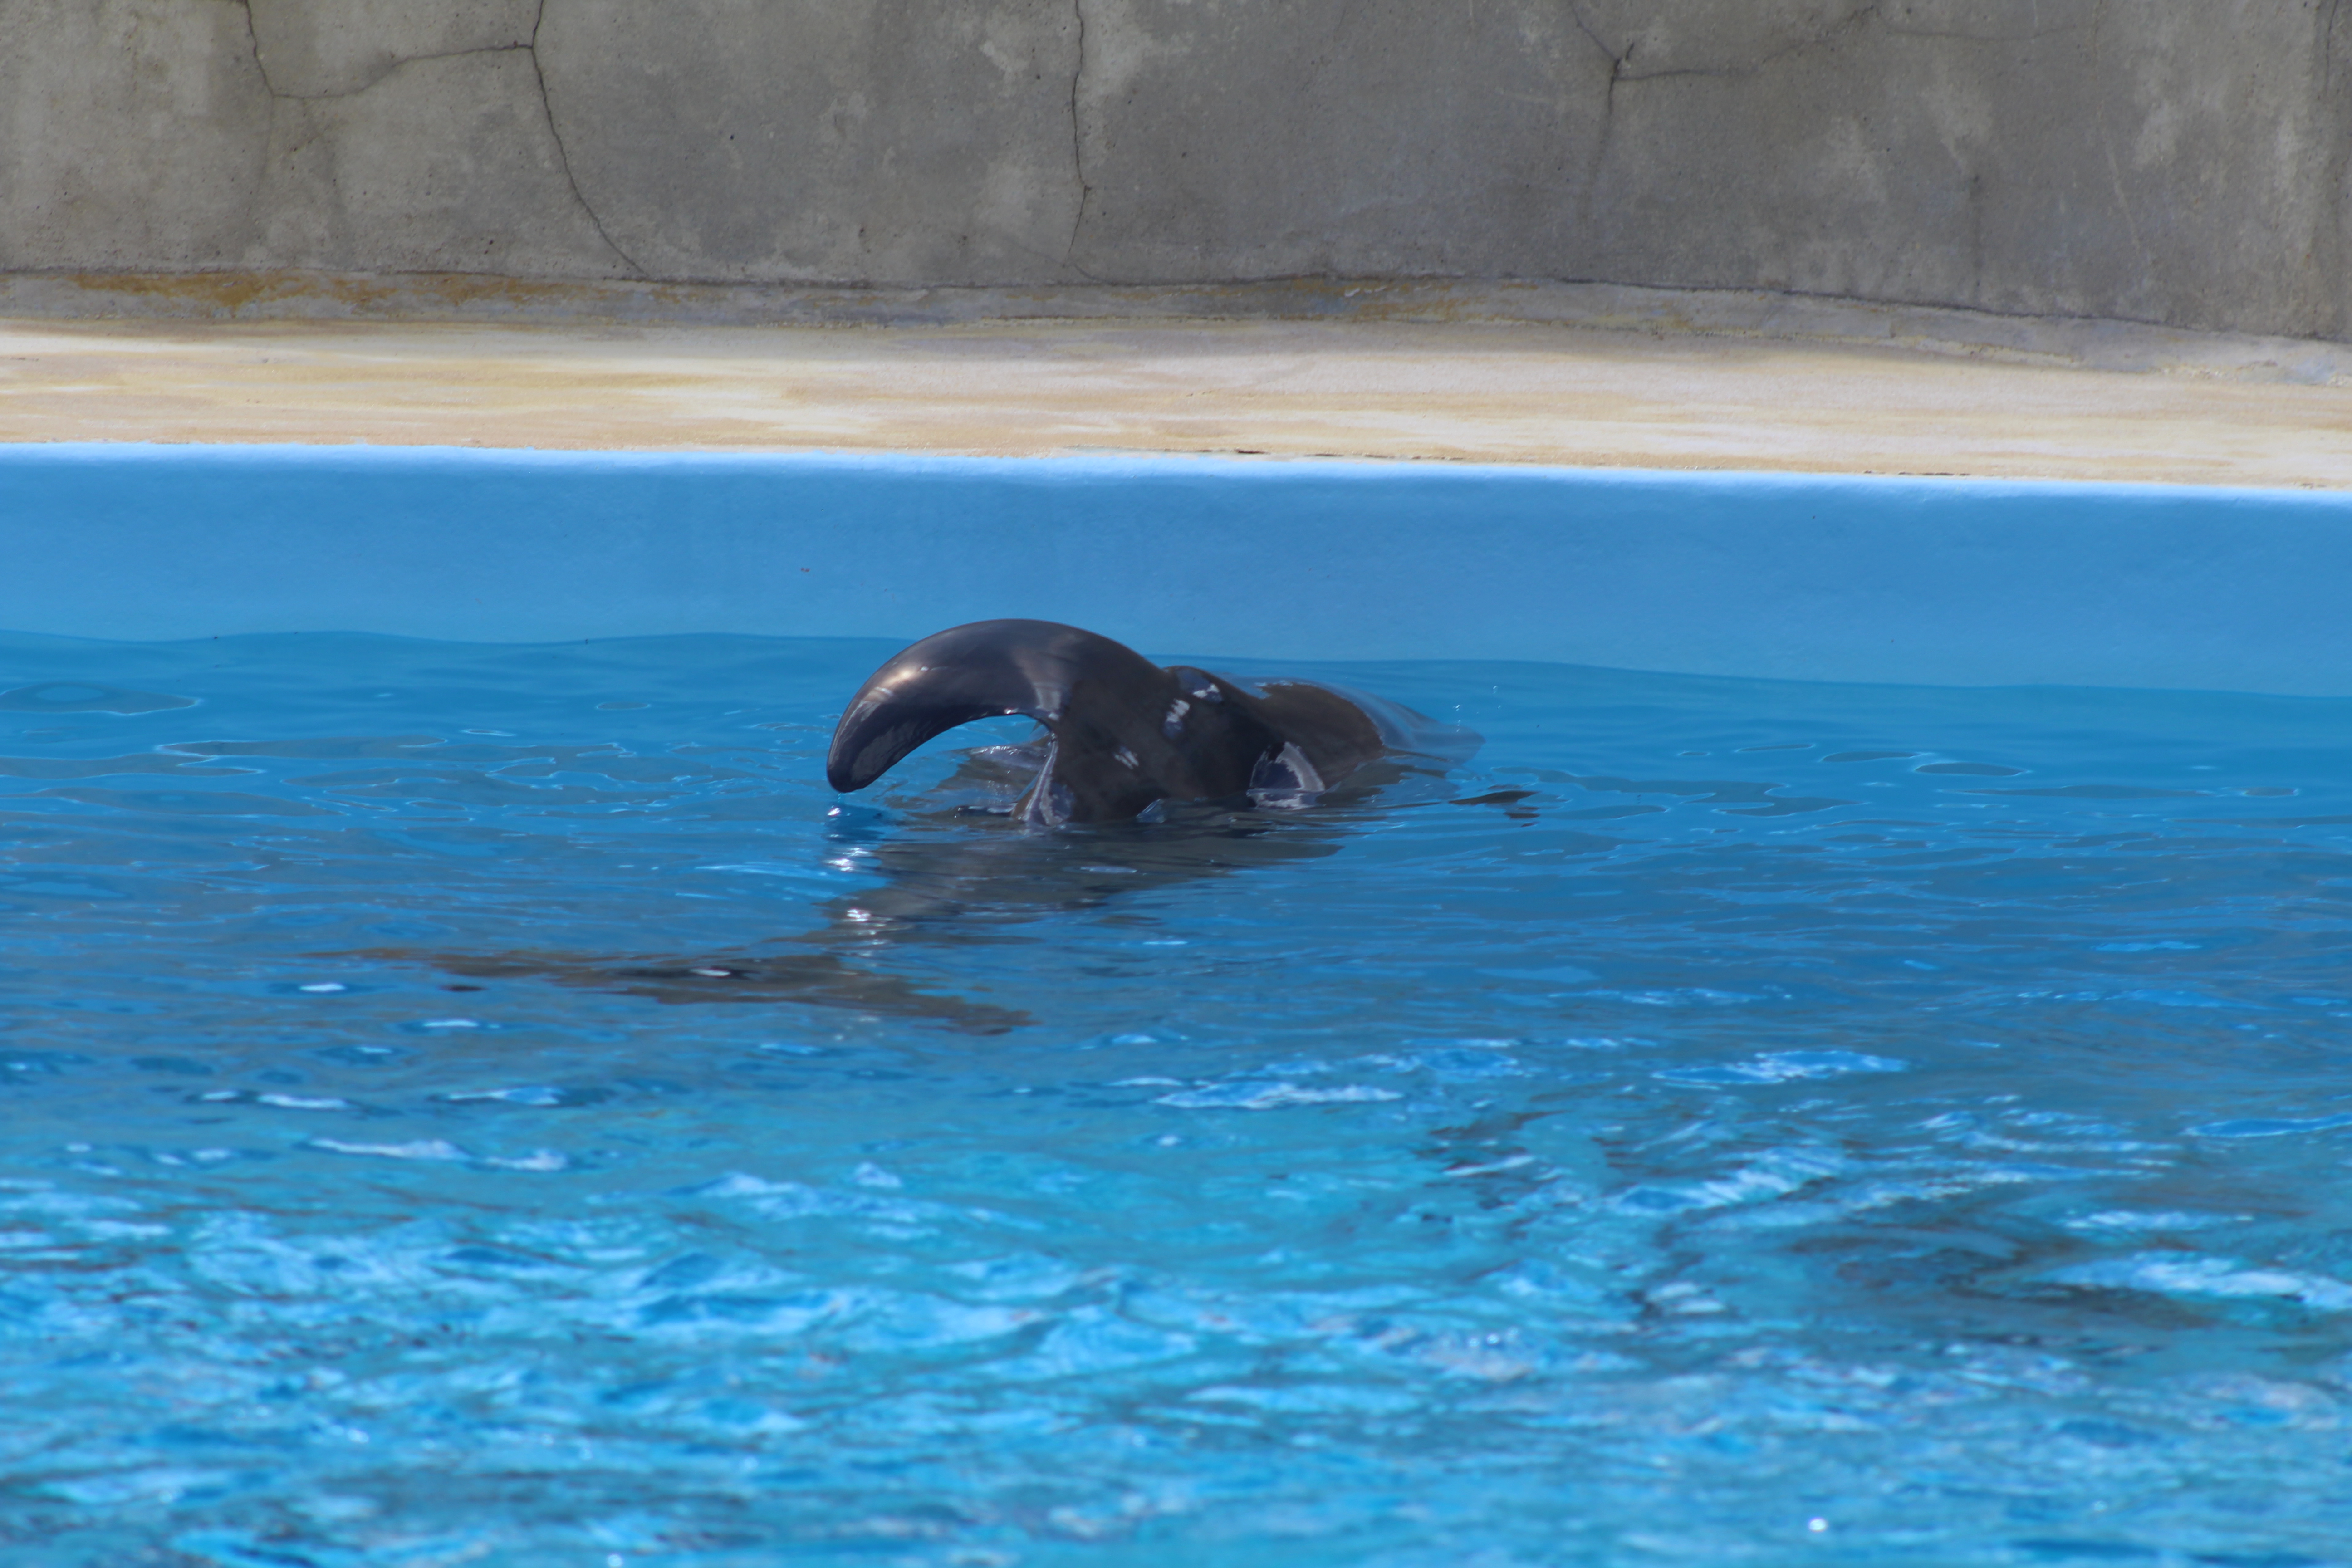 Fermeture du delphinarium du Parc Astérix – Nos inquiétudes sur le devenir des dauphins…